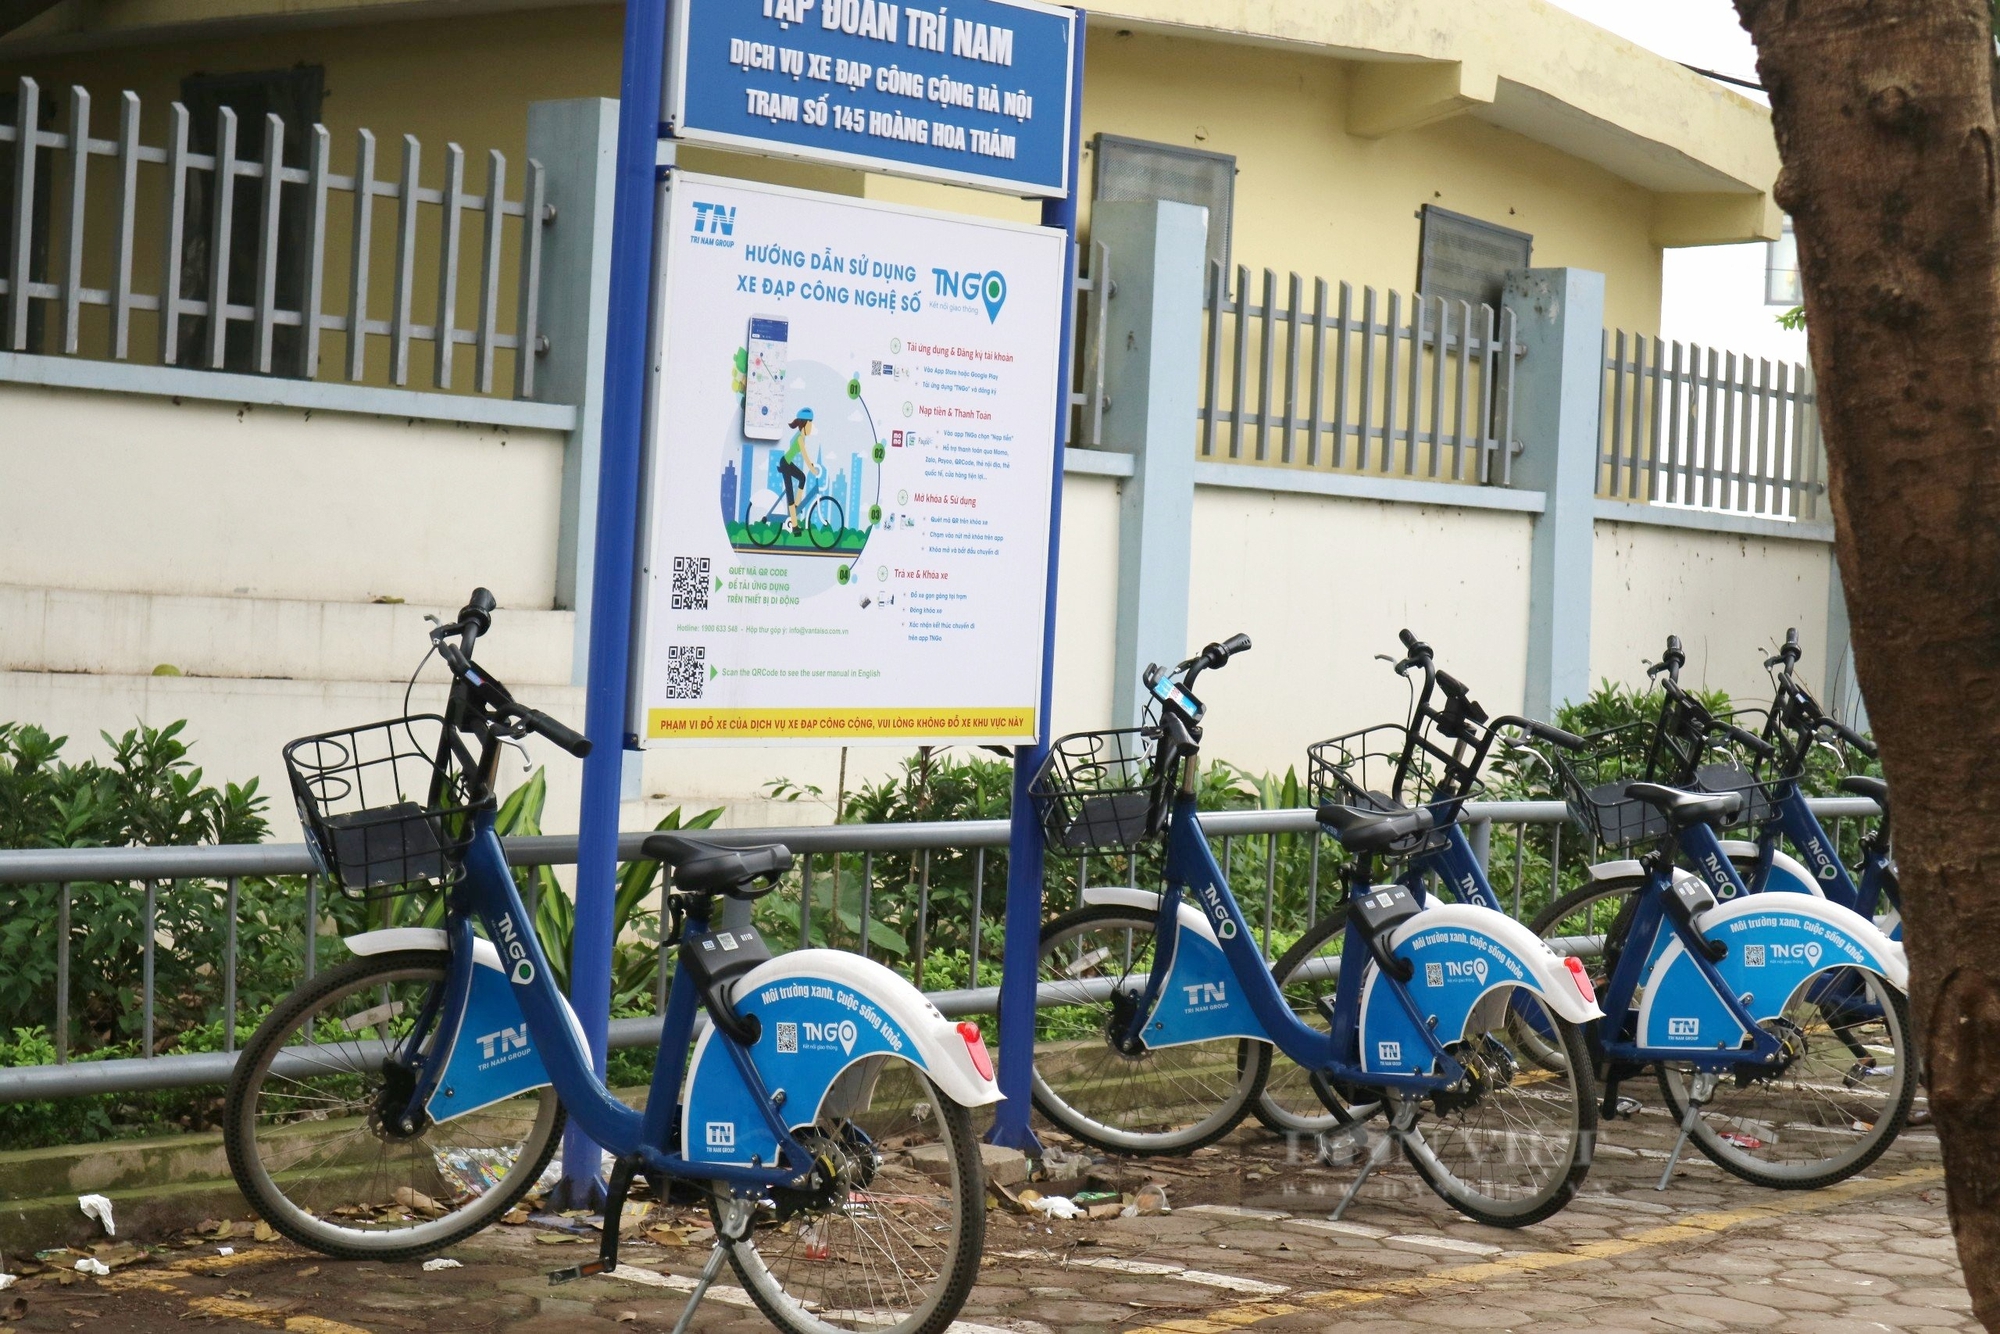 Dịch vụ xe đạp công cộng Hà Nội được người dân sử dụng gần 1.150 lượt/ngày - Ảnh 4.